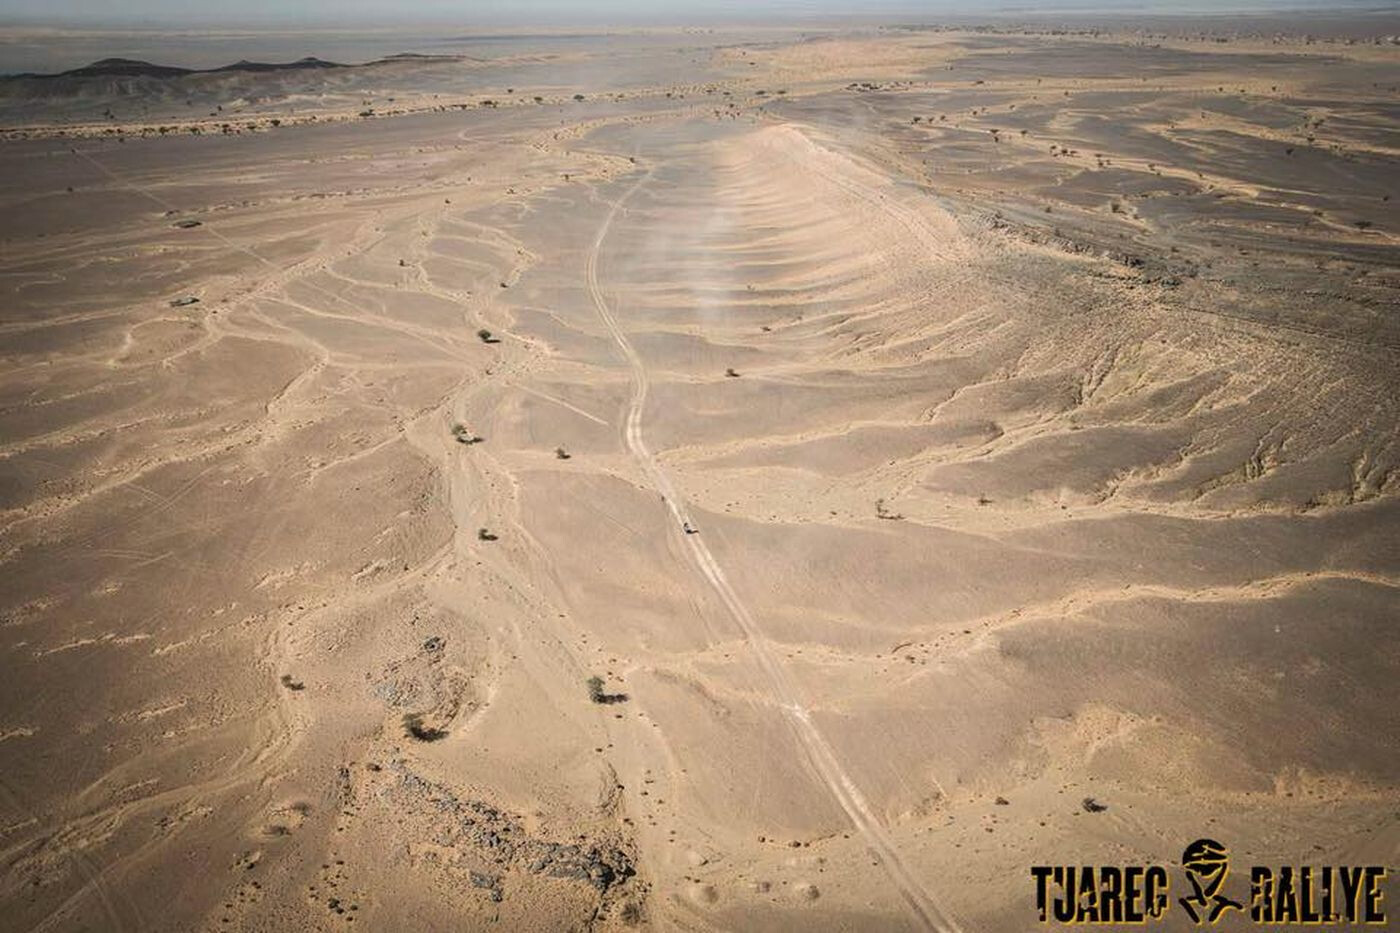 Tuareg Rally 2018